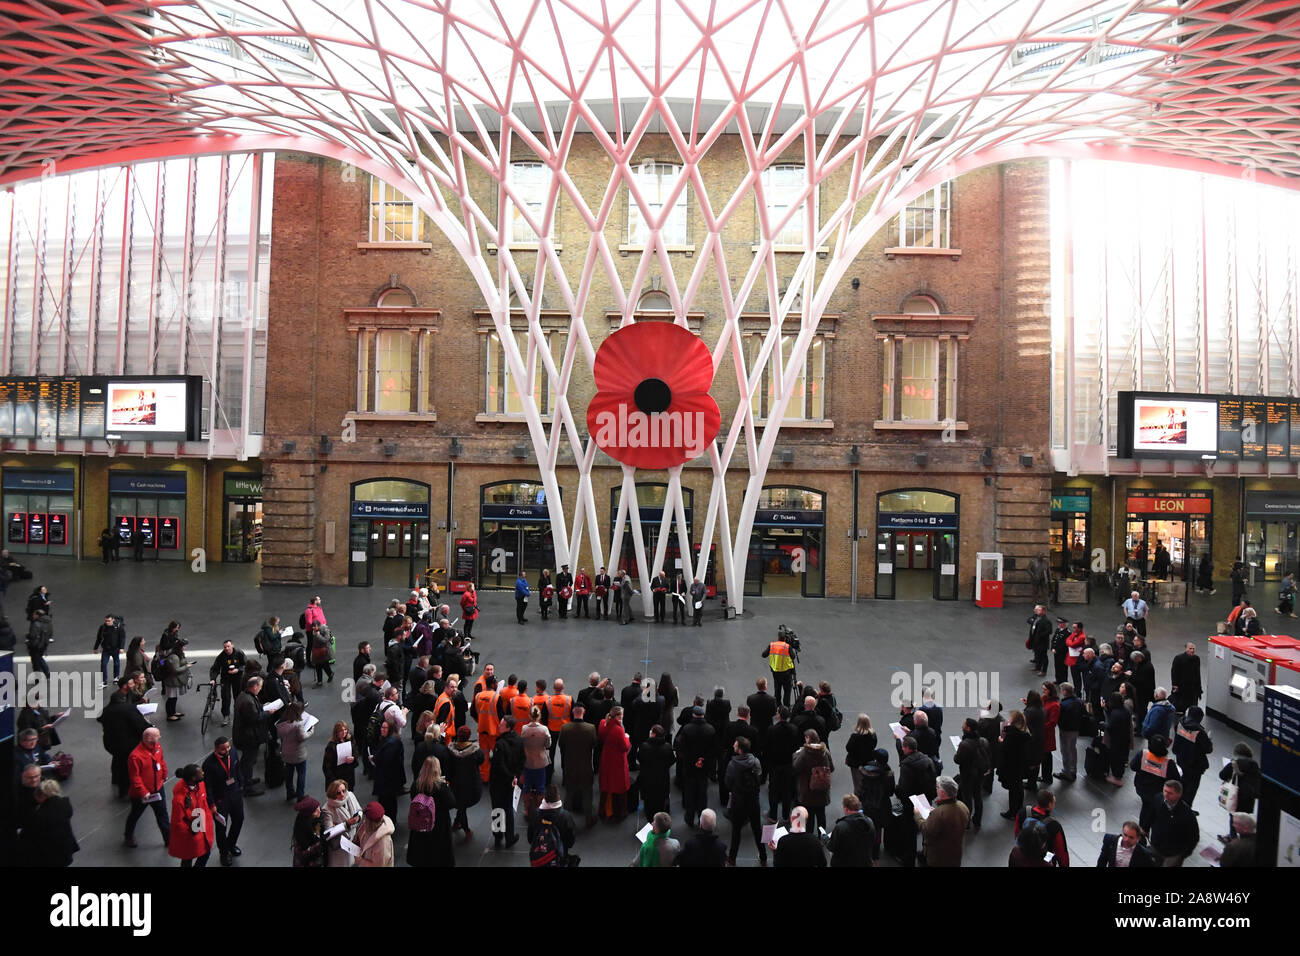 Un grand modèle d'un coquelicot sur l'affichage au King's Cross St Pancras à Londres, comme les gens observent un silence pour marquer le Jour de l'Armistice, l'anniversaire de la fin de la Première Guerre mondiale. Banque D'Images